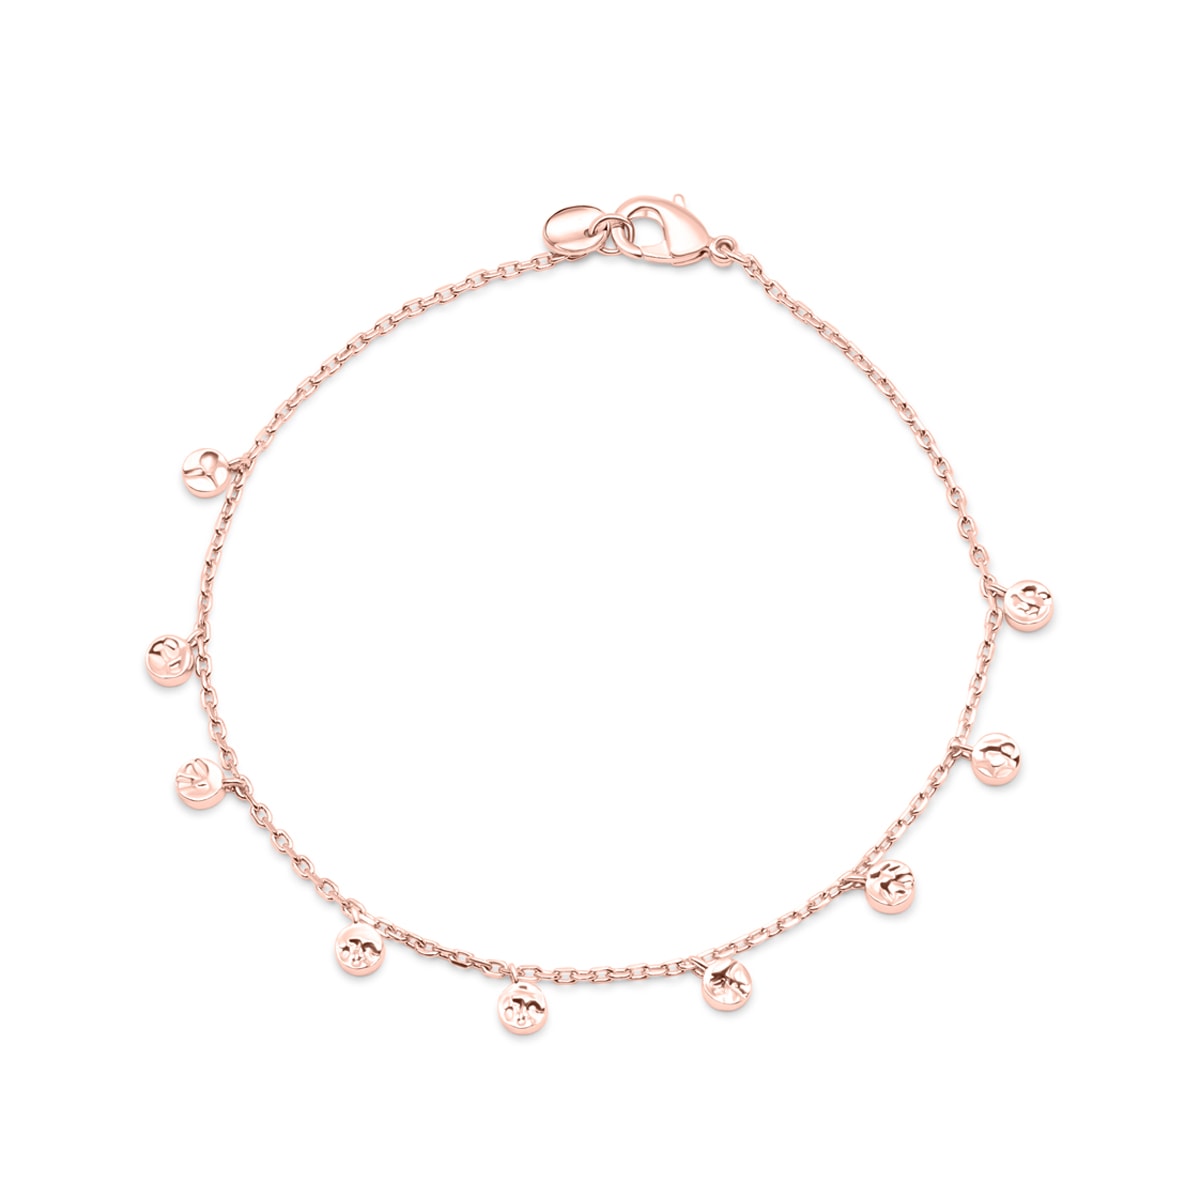 Rose gold pendant chain bracelet